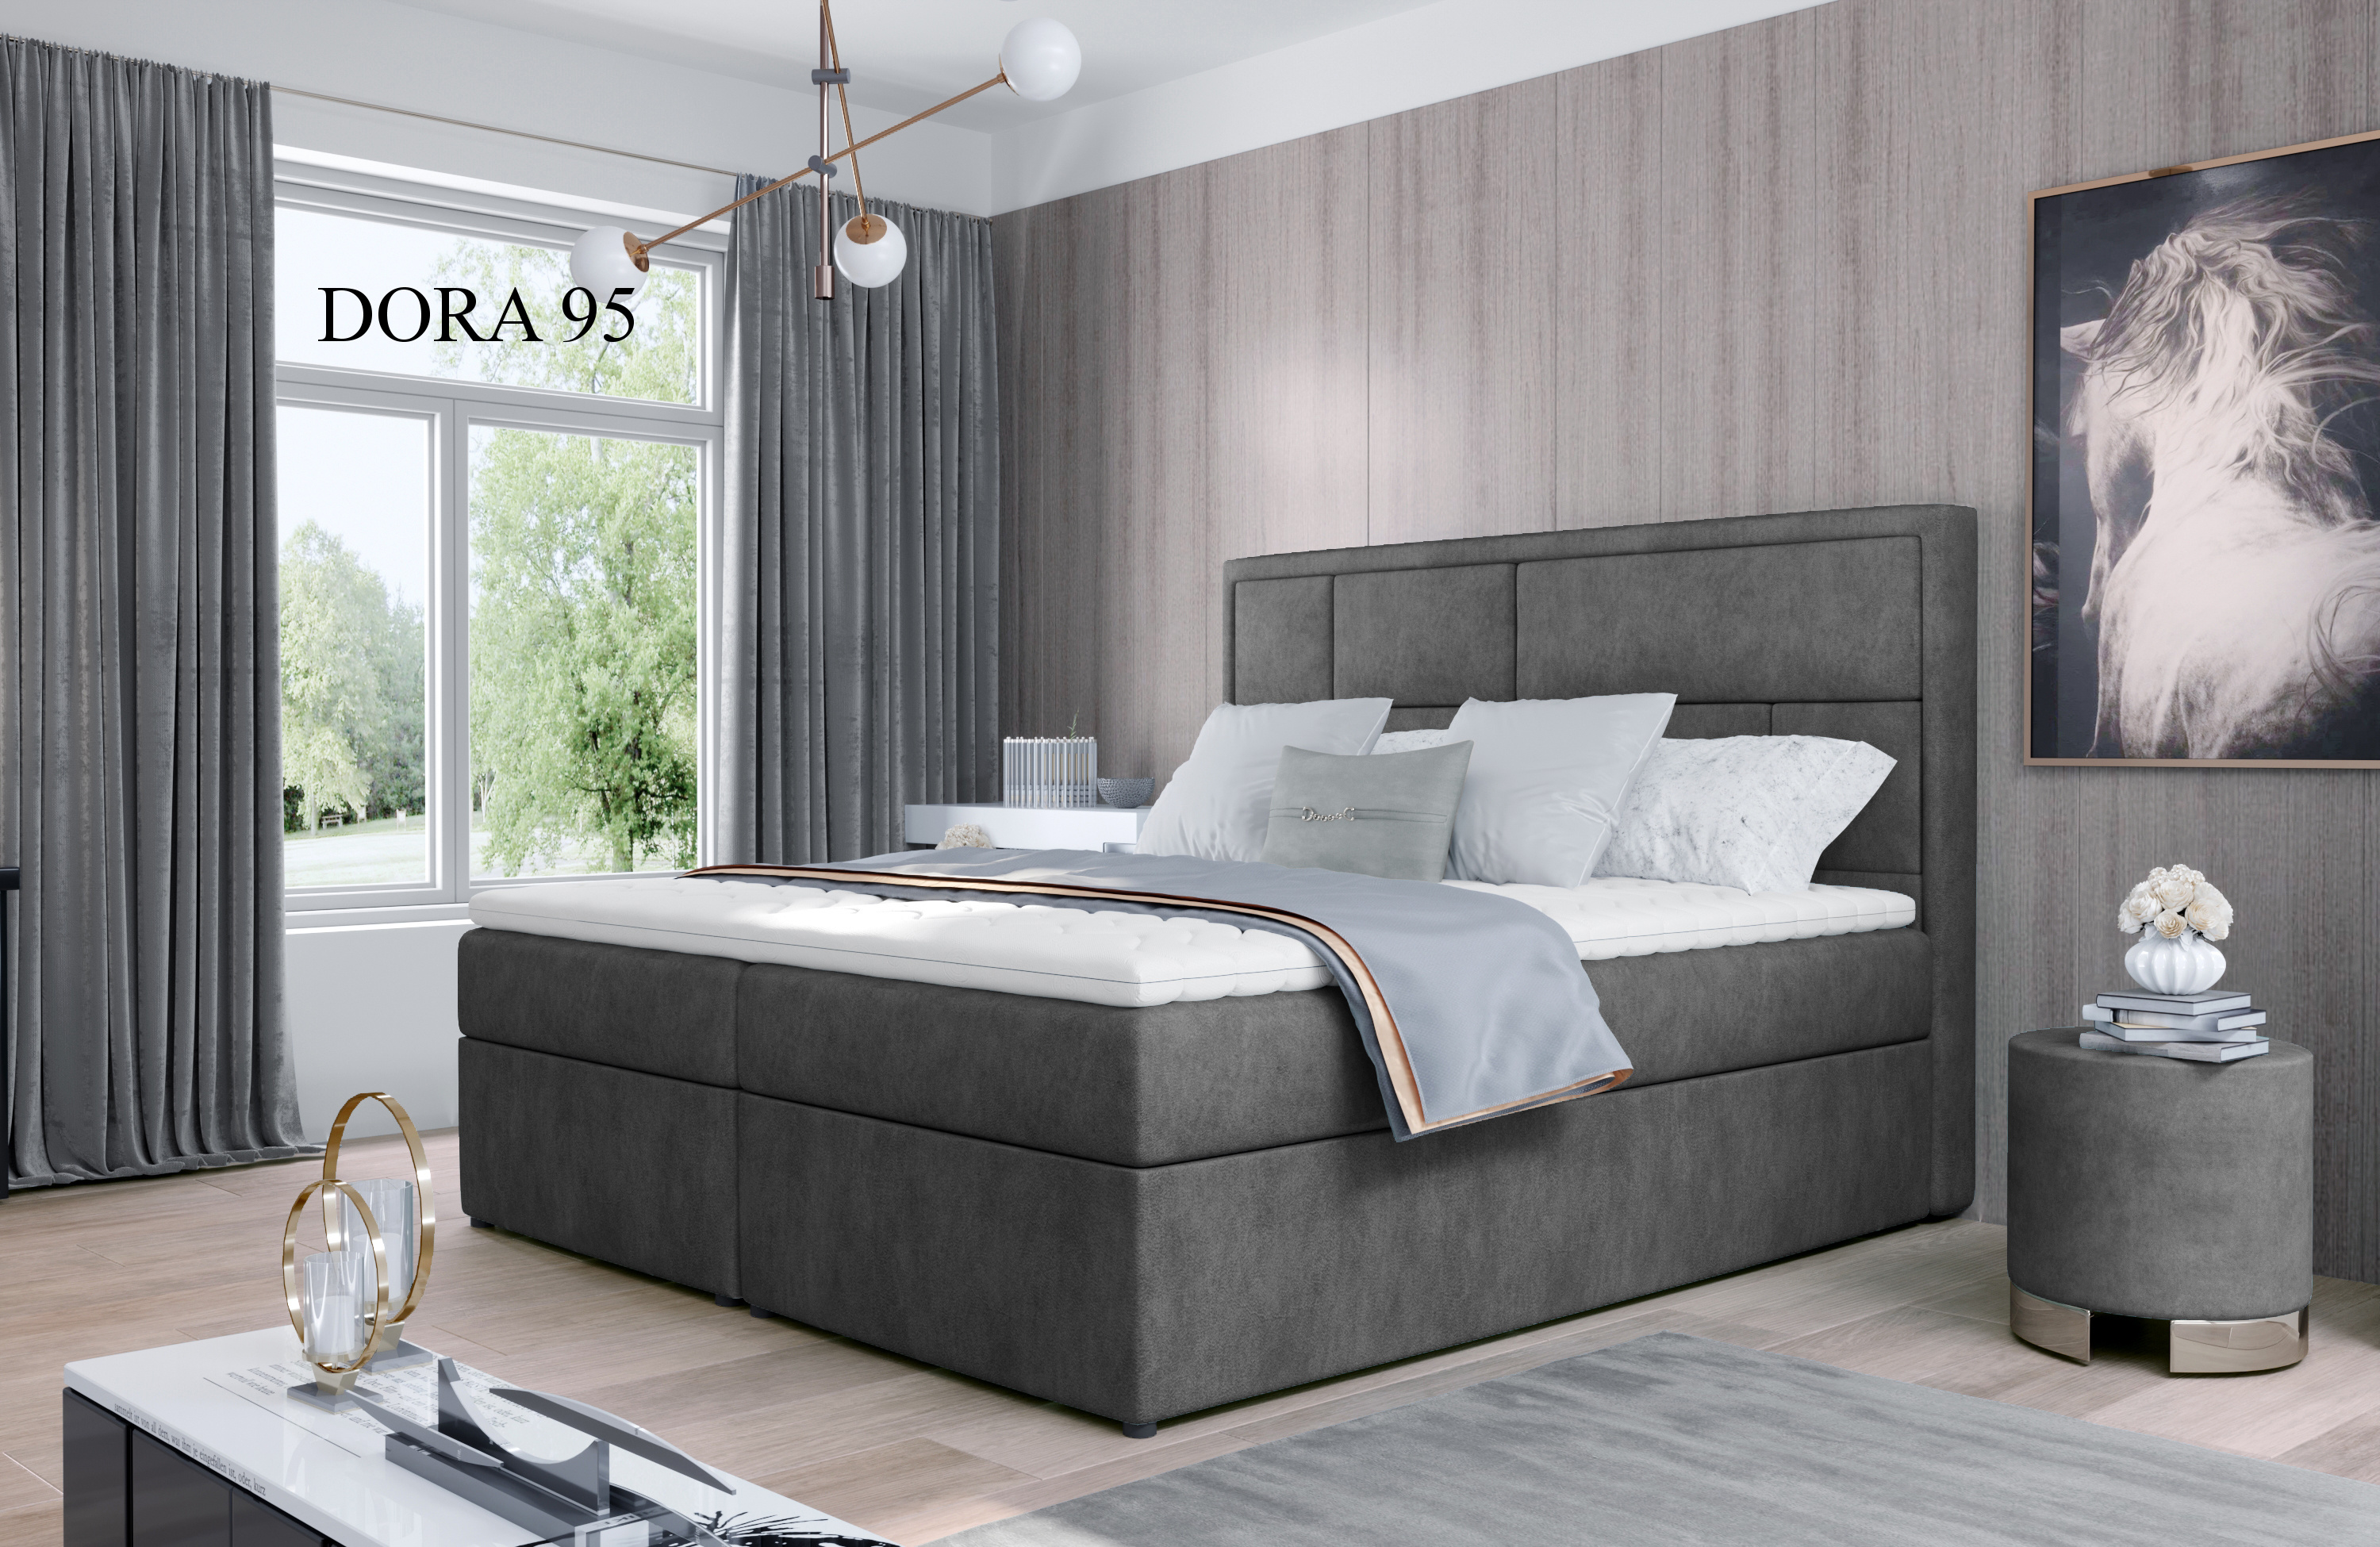 Čalouněná postel MERON Boxsprings 140 x 200 cm Provedení: Dora 95